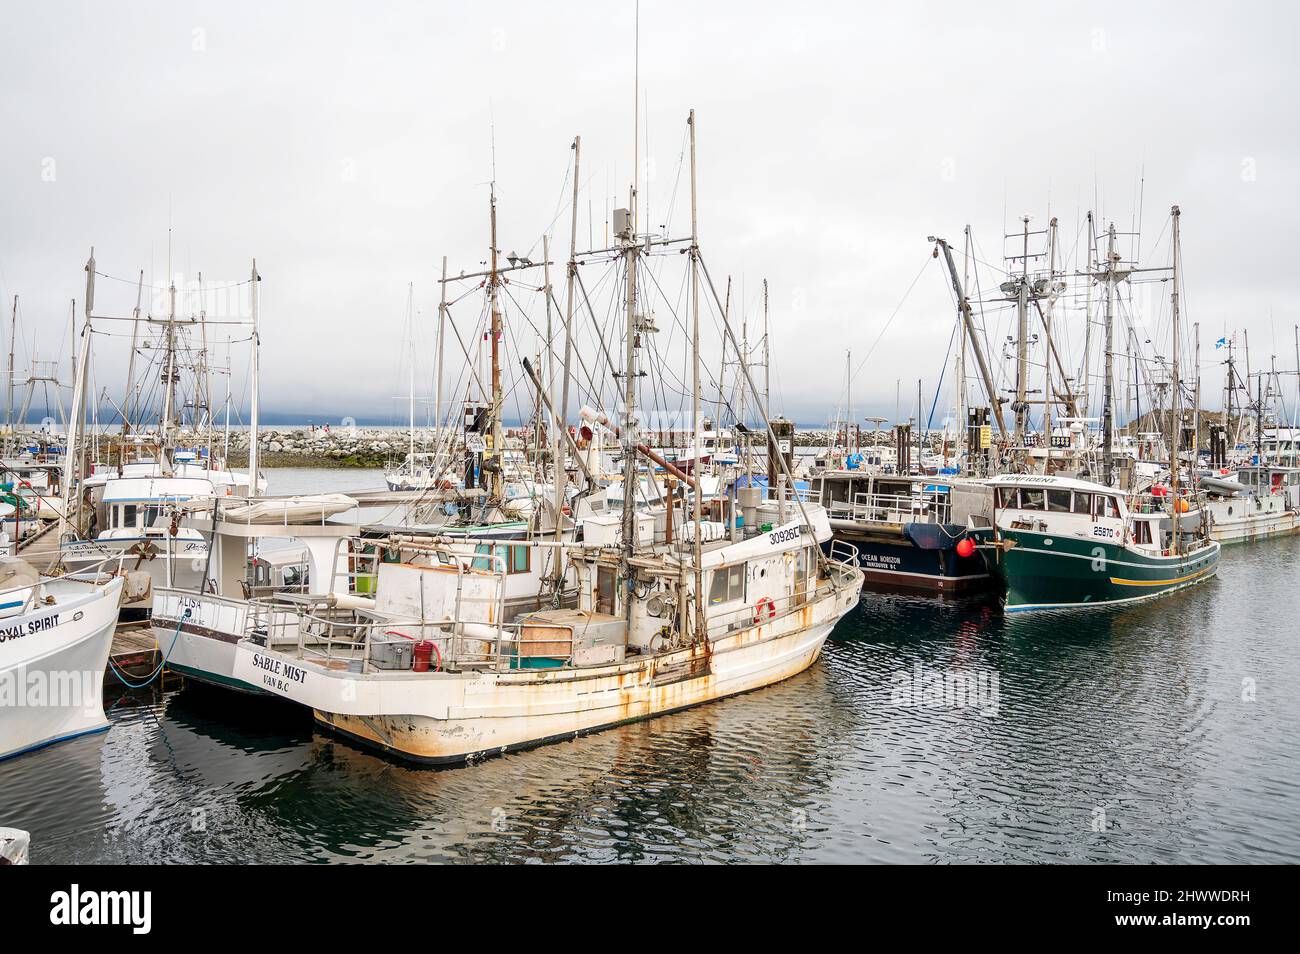 Des bateaux de pêche commerciaux ont été amarrés au port de French Creek, le long de la route de l'île de Vancouver, entre Nanaimo et Courtney, C.-B., Canada. Banque D'Images